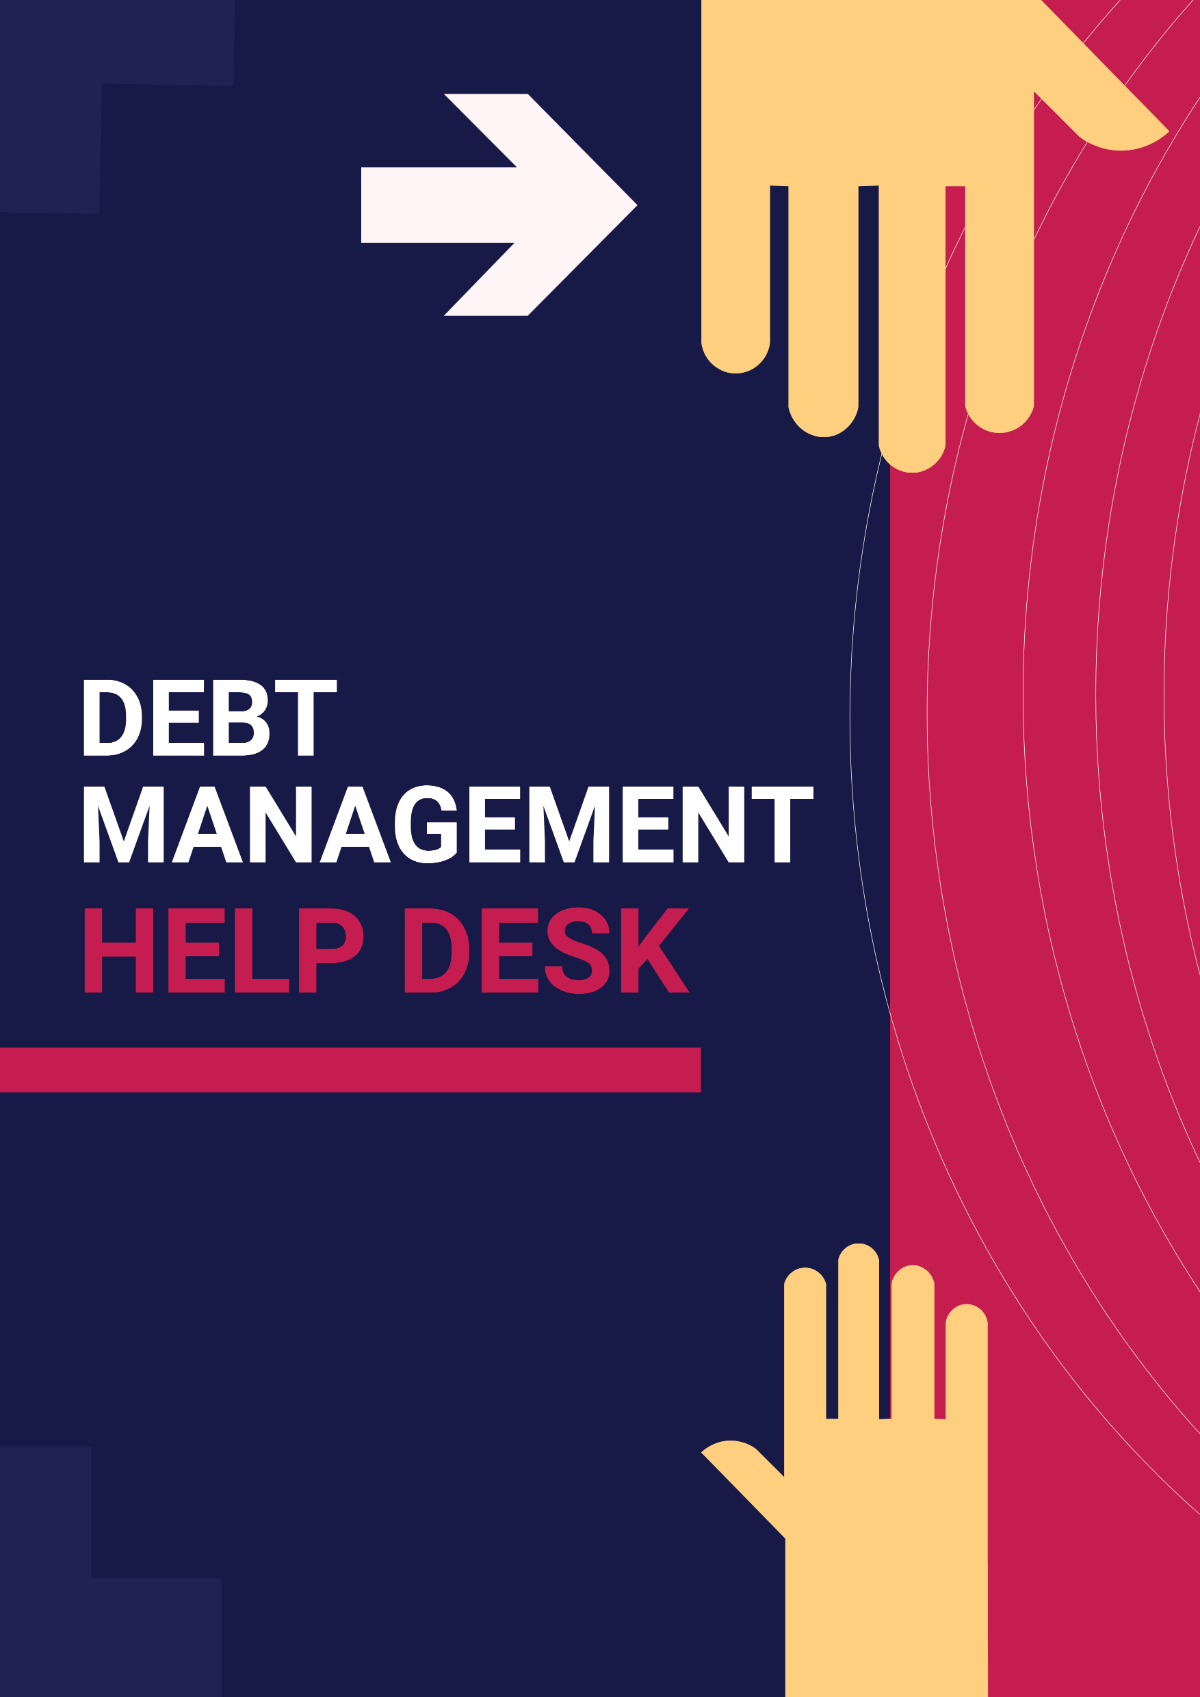 Debt Management Help Desk Signage Template